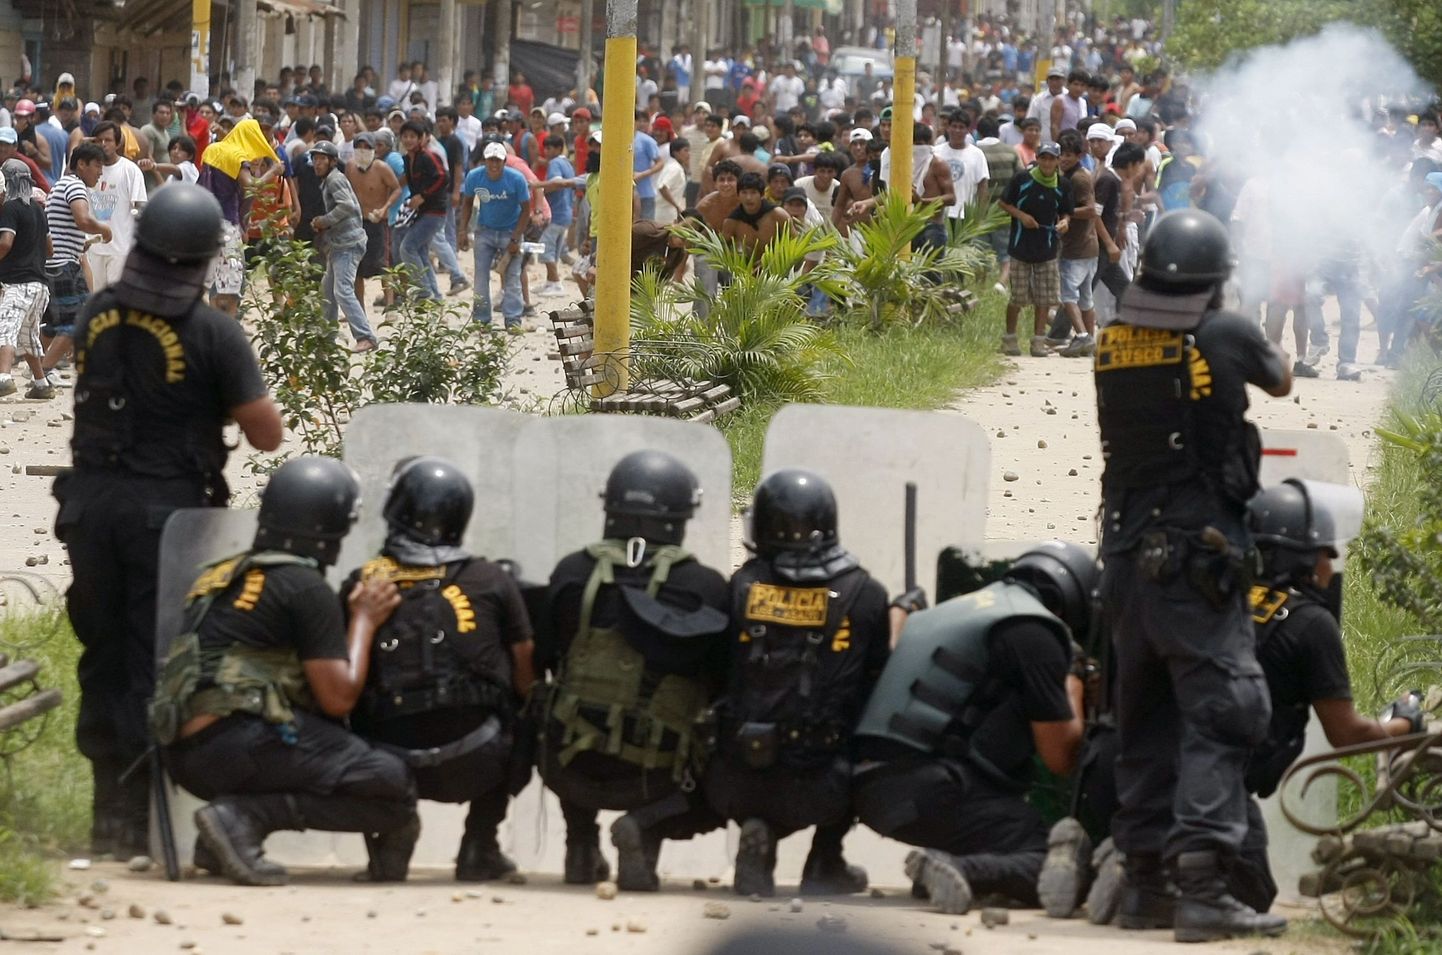 Peruu märulipolitsei peab kullakaevajatega lahingut.